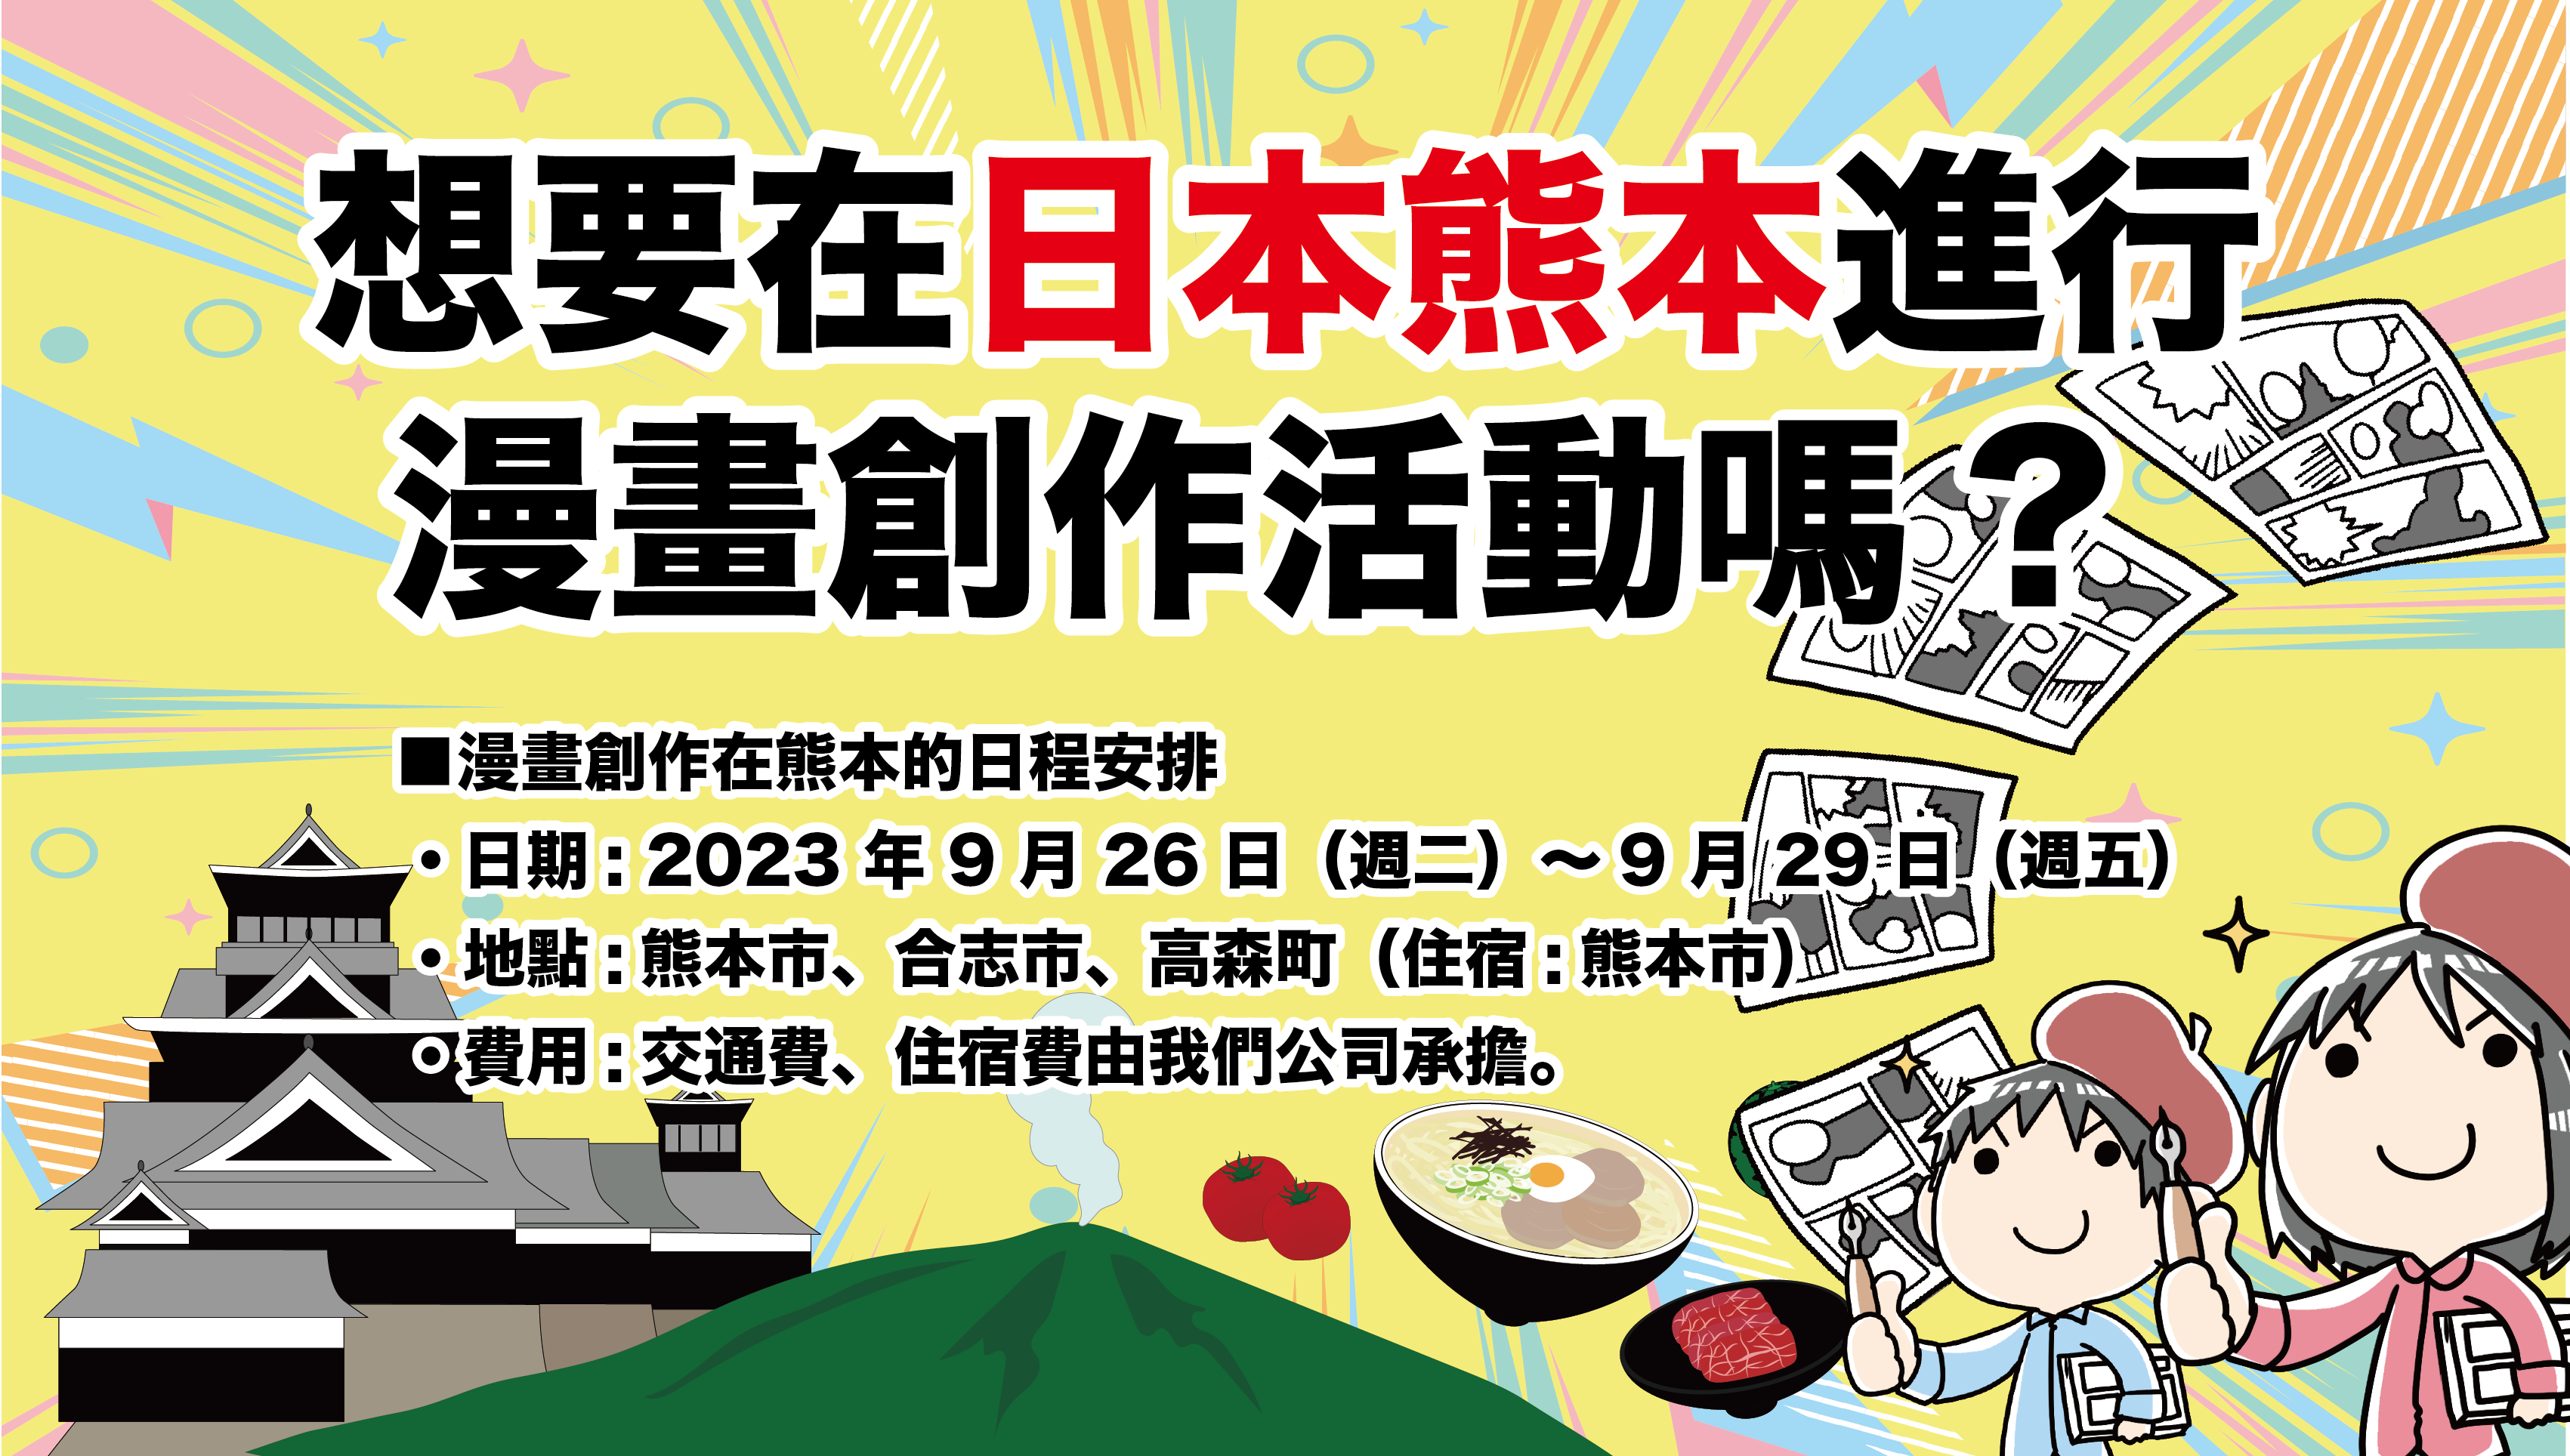 想要在熊本進行漫畫創作活動嗎？——尋找有興趣參與「熊本漫畫創作計劃」的臺灣漫畫家！